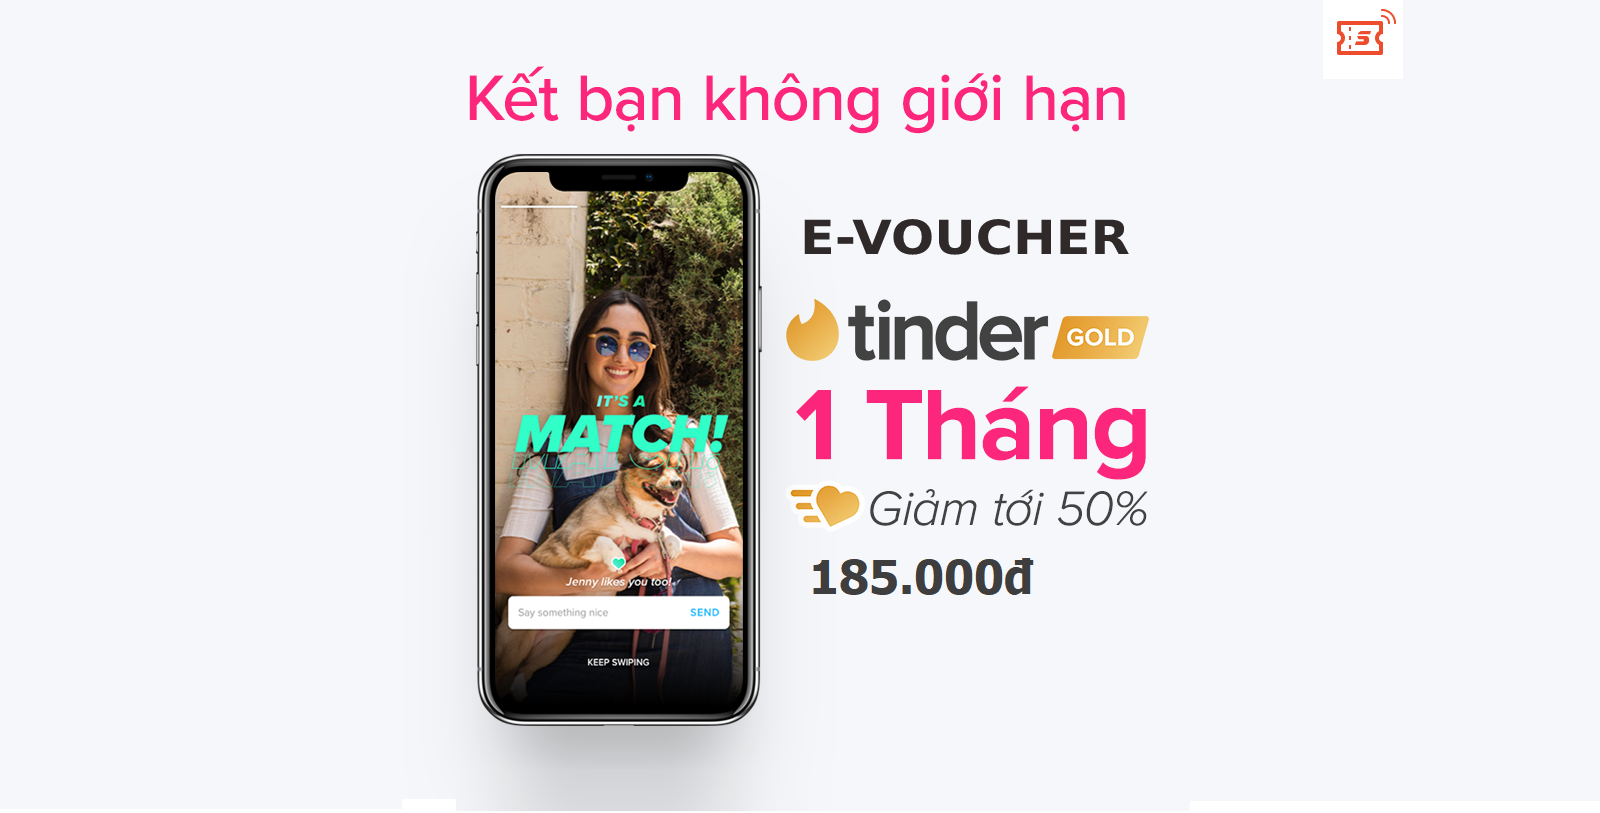 GIÁ HỦY DIỆT [E-voucher] Gói Tinder Gold 1 tháng